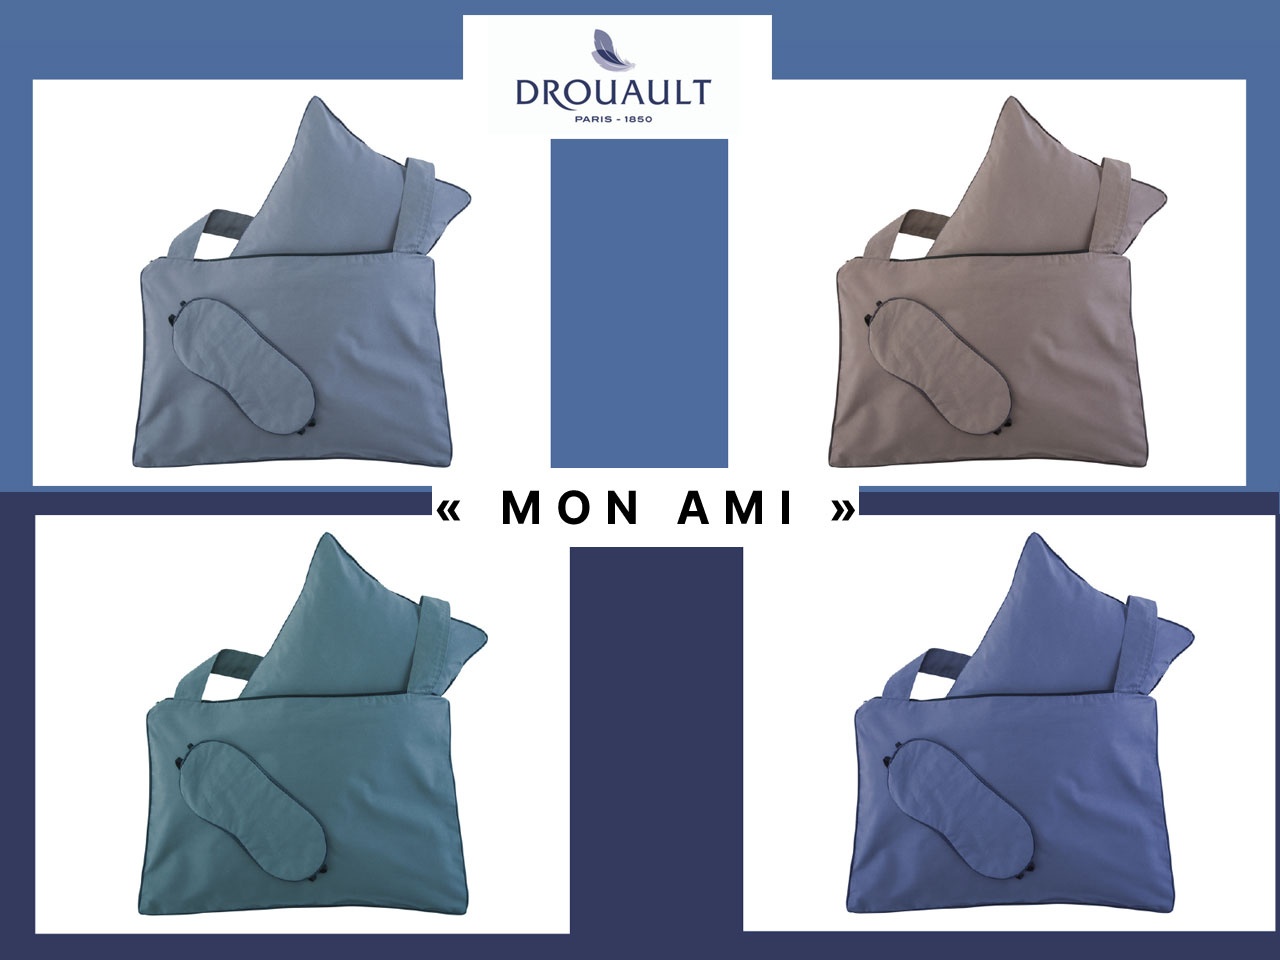 DROUAULT imagine « MON AMI », un set d’accessoires de repos nomade